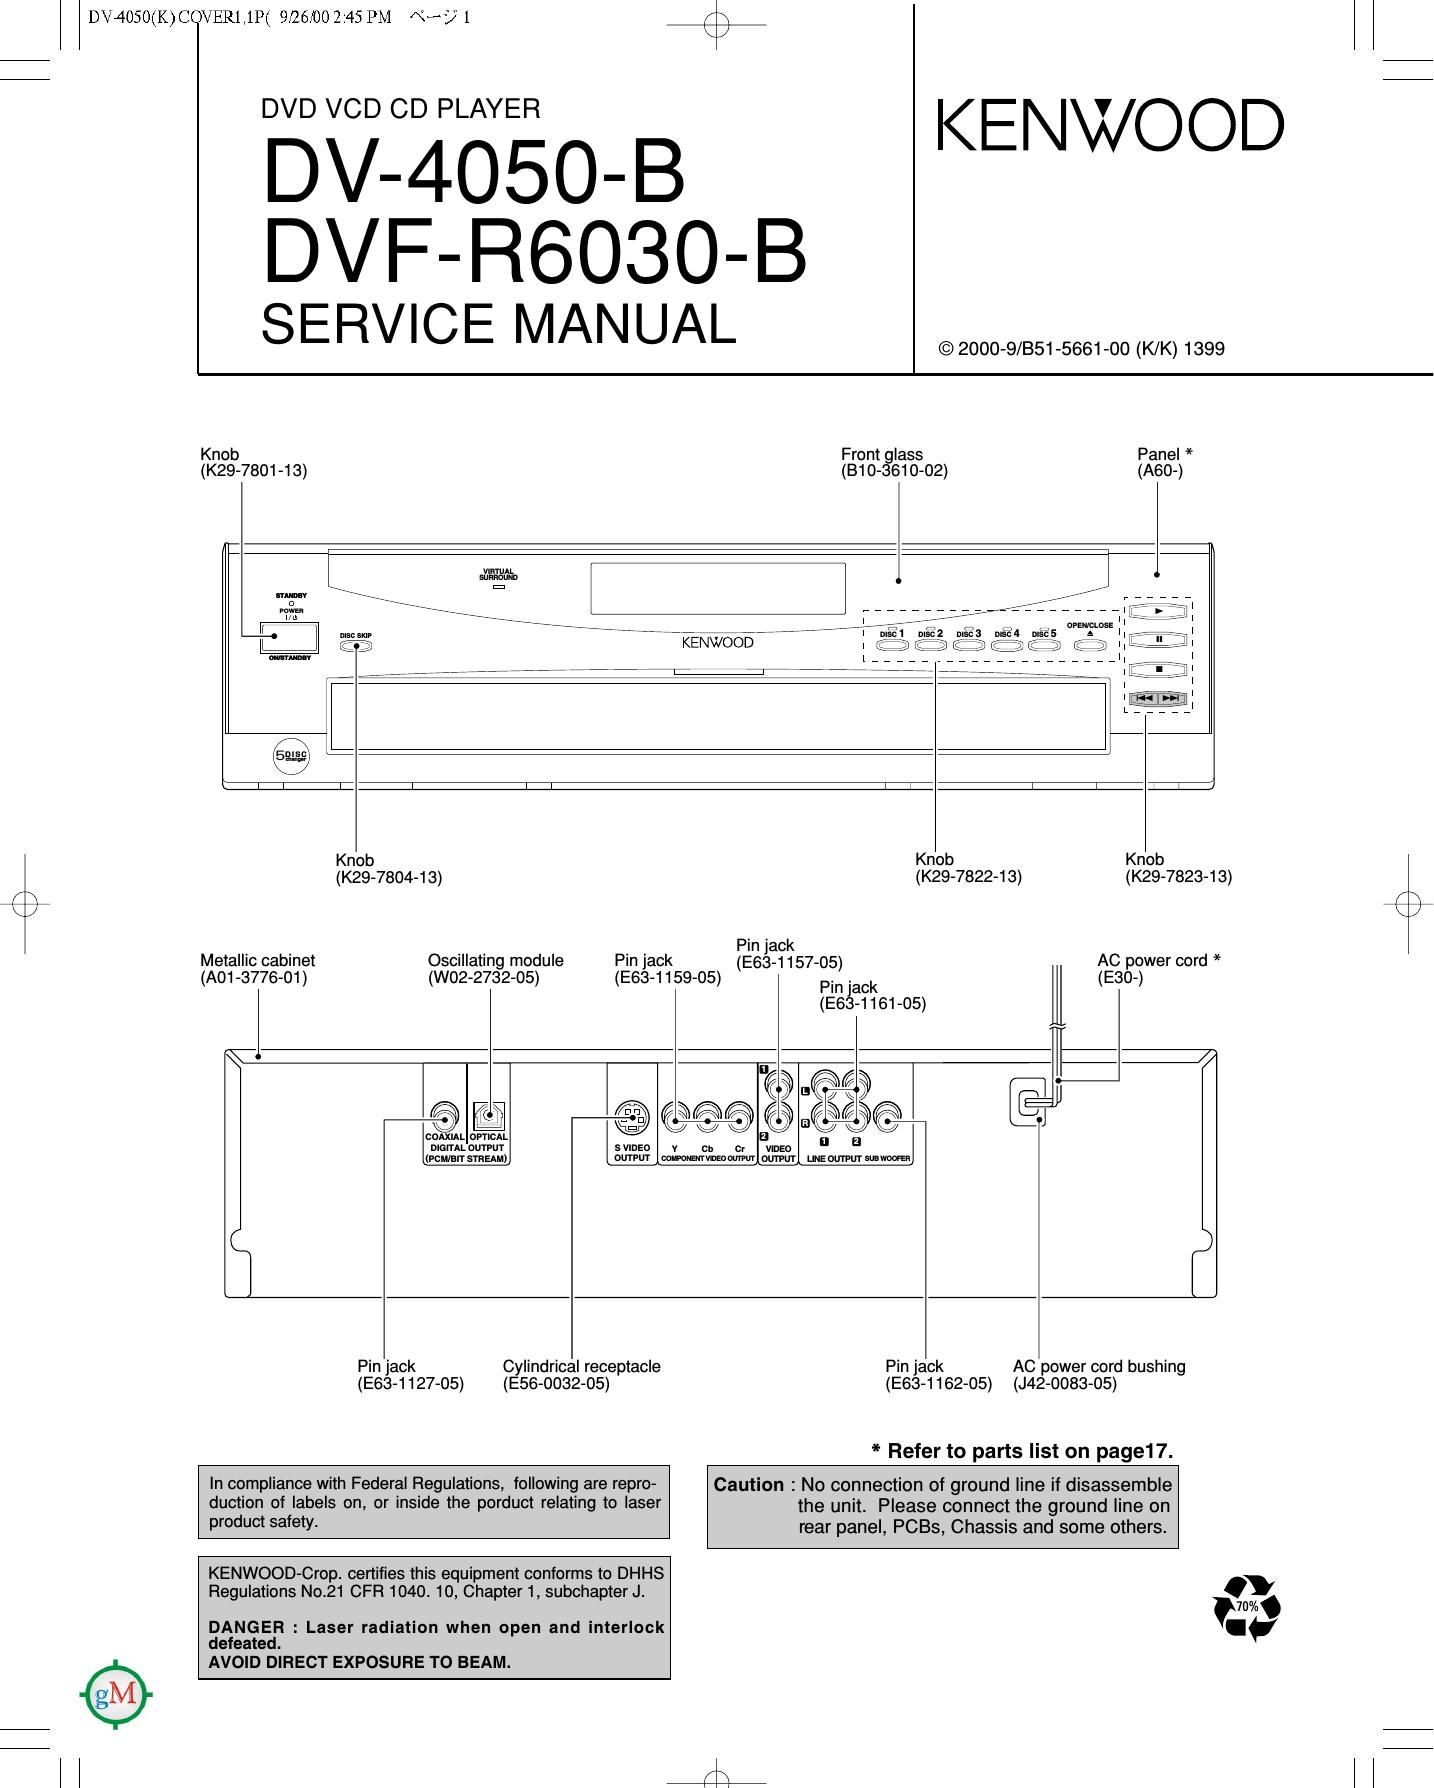 Kenwood DVFR 6030 B Service Manual